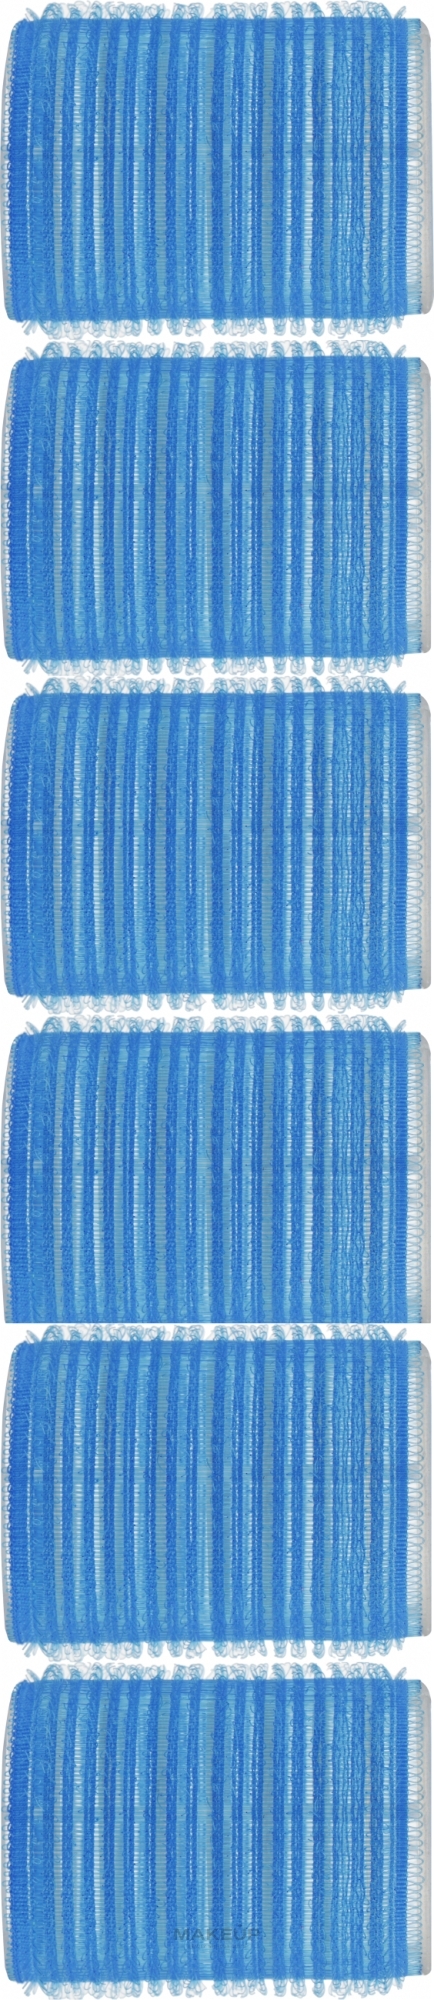 Бигуди-липучки 0447, 44 мм, синие - SPL — фото 6шт